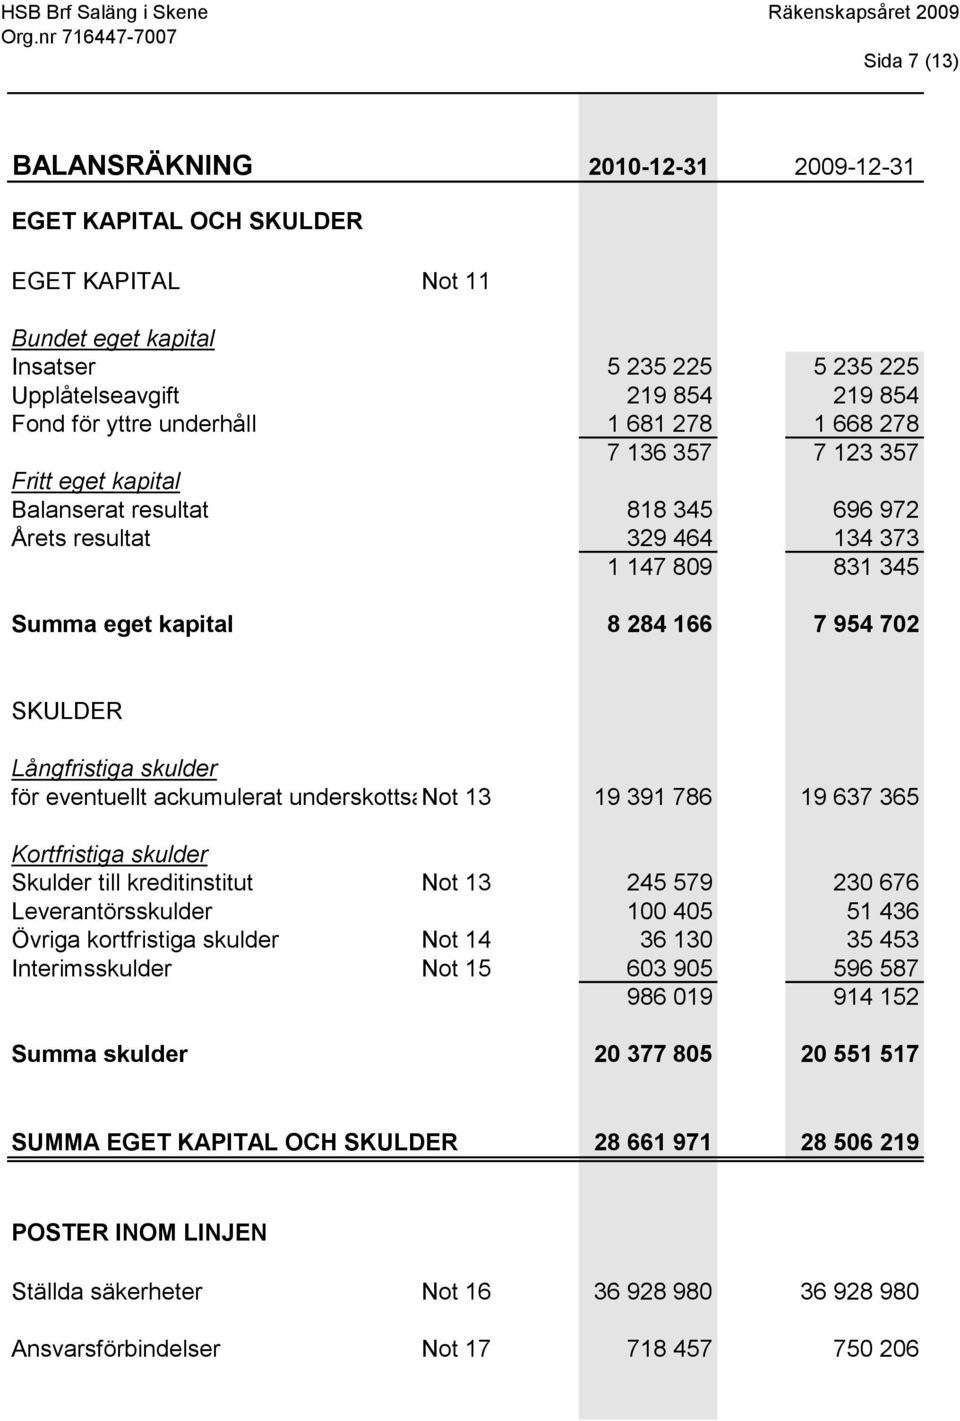 Långfristiga skulder för eventuellt ackumulerat underskottsavdrag Not 13från taxeringsår 19 3912010.